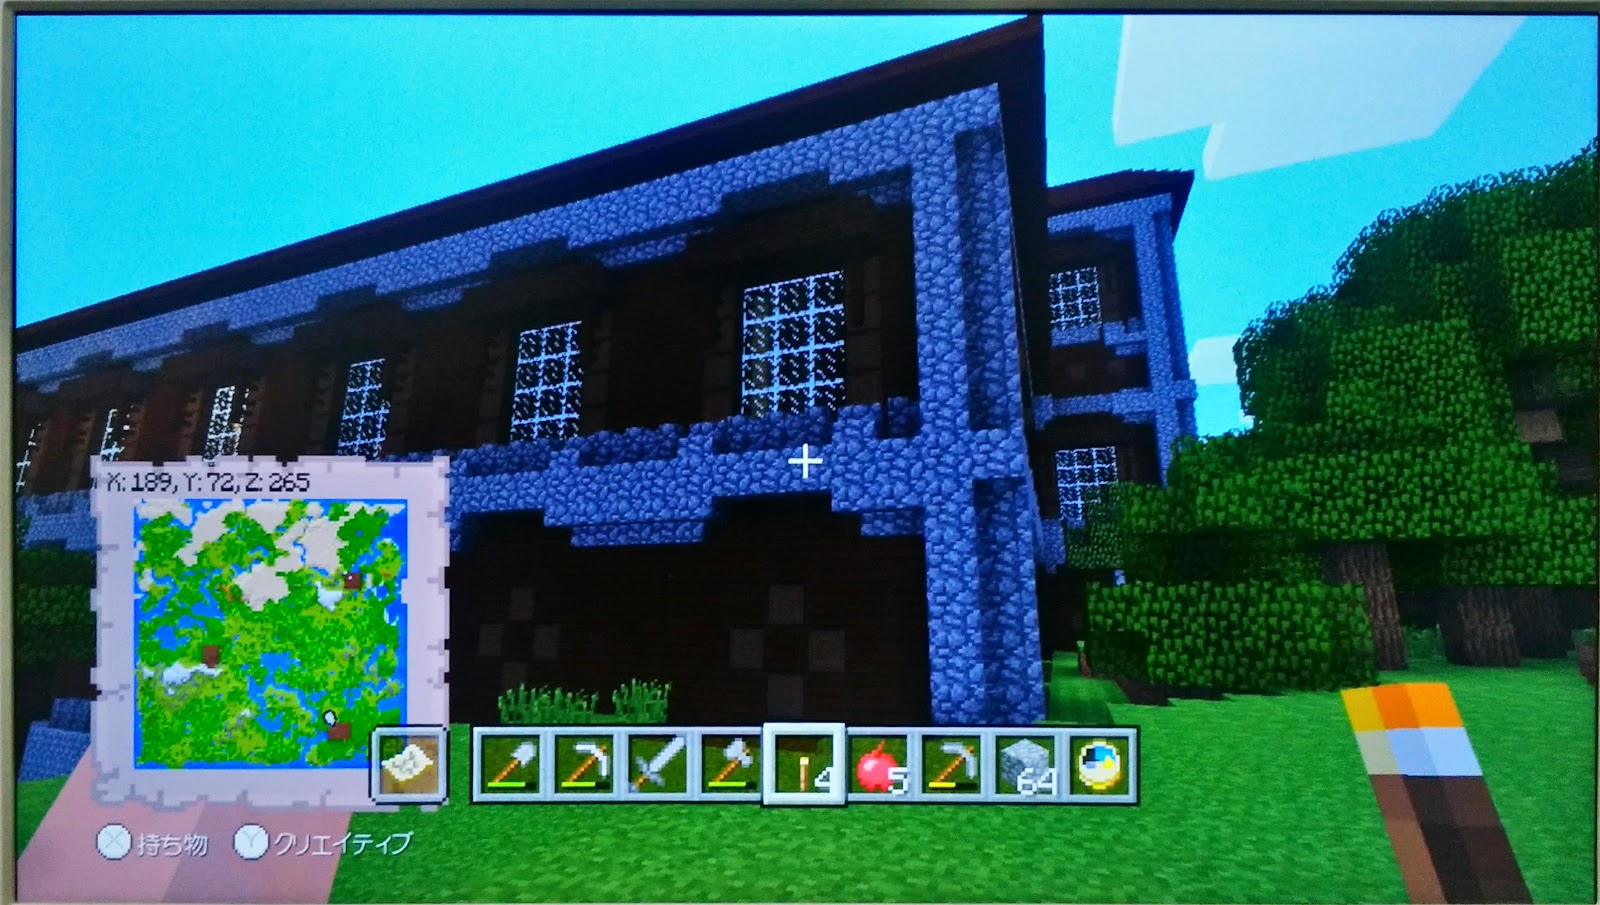 ぬこのおなかの備忘録 Minecraft Wii U Edition Seed 村4つ 森の洋館3つ ピラミッド3つ 魔女の家2つ 廃坑ほかの準神マップ ネタバレ注意